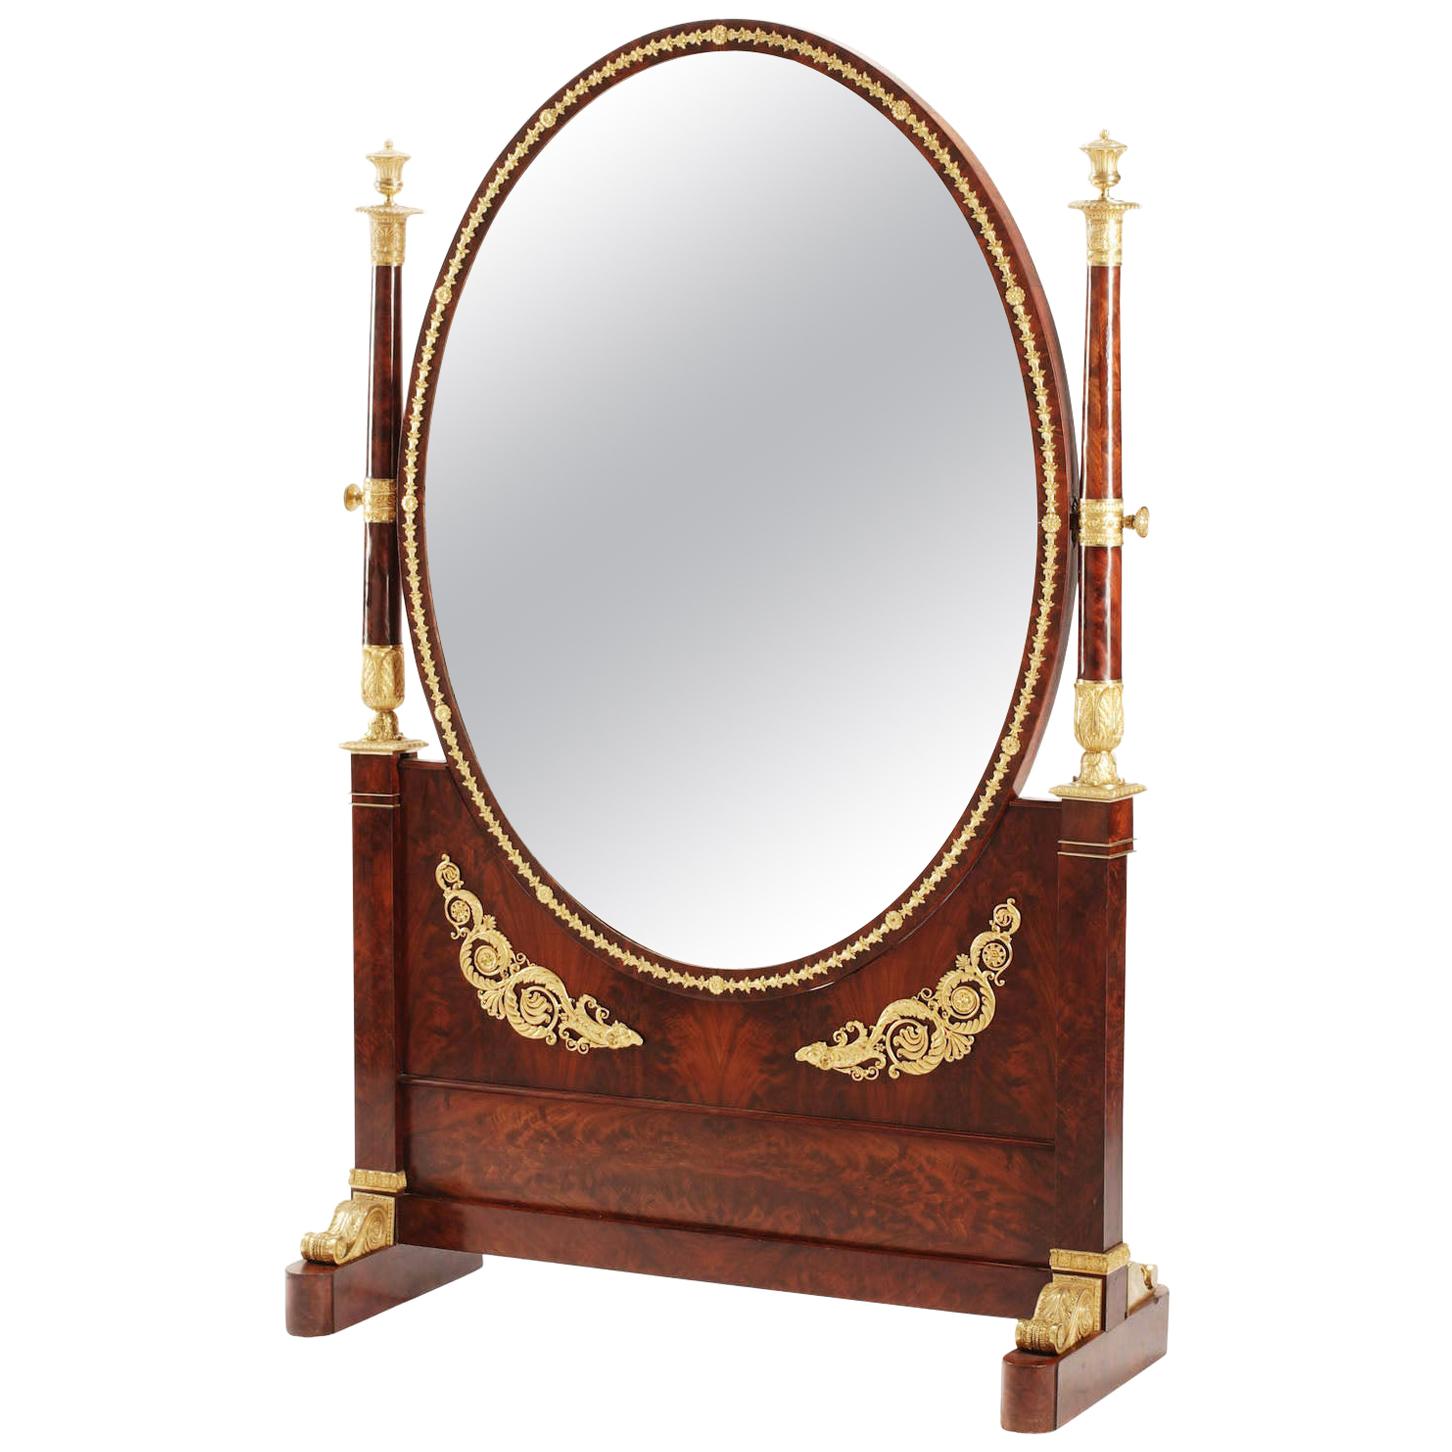 Cheval-Spiegel im Empire-Stil von Napoleon III. aus Mahagoni und Goldbronze, montiert